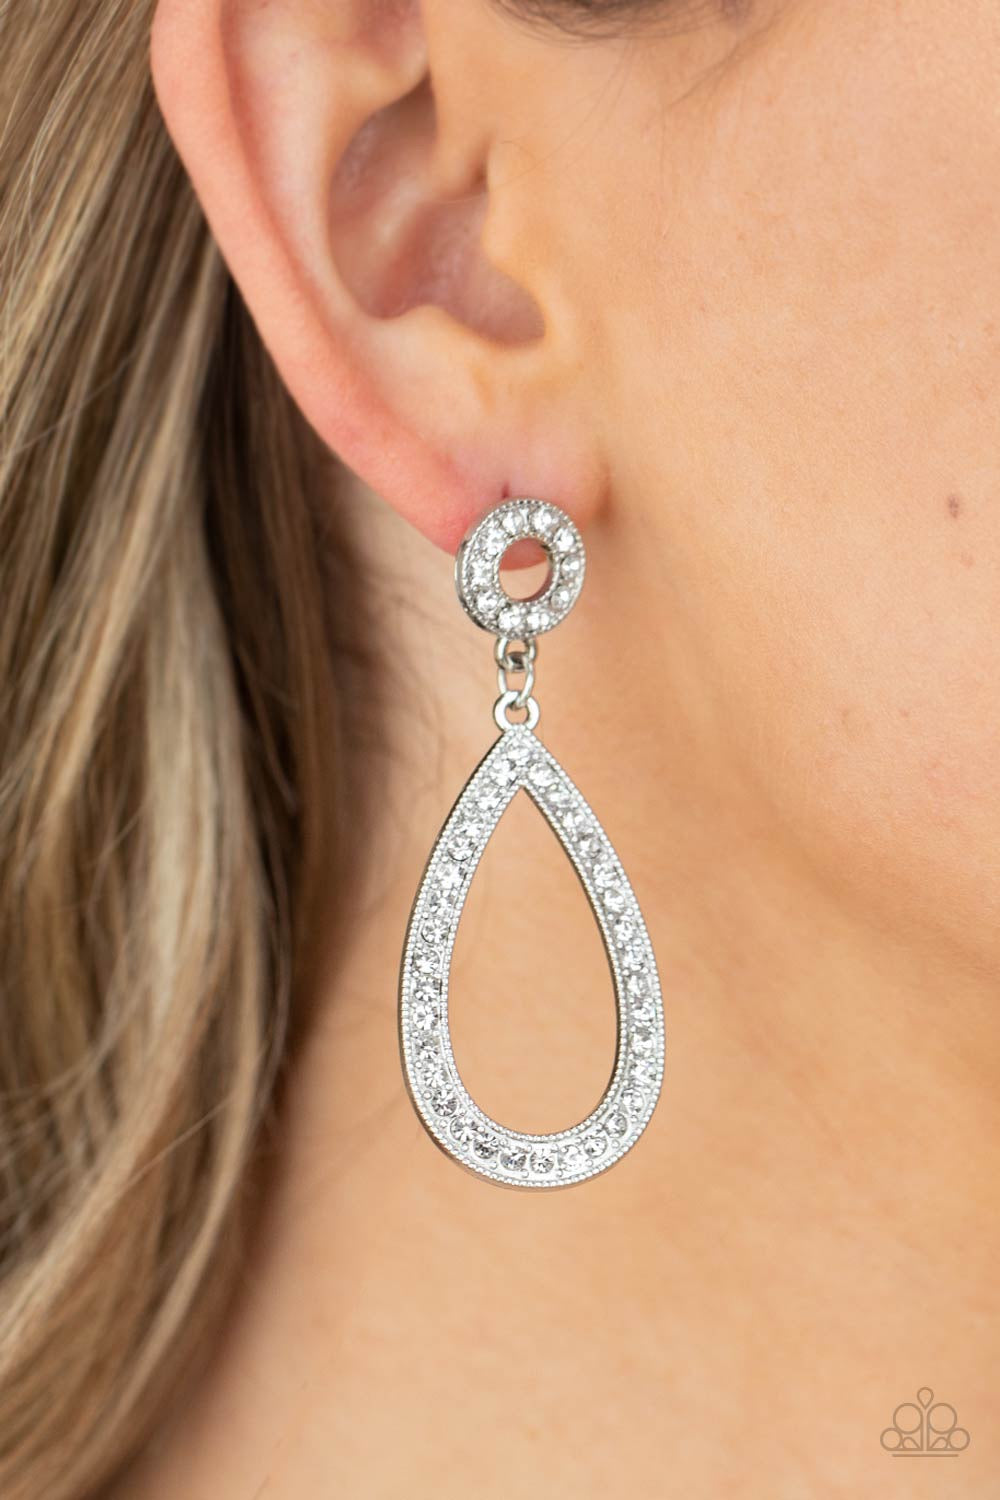 Teardrop Earrings - Paparazzi Regal Revival - White Earrings Paparazzi jewelry image